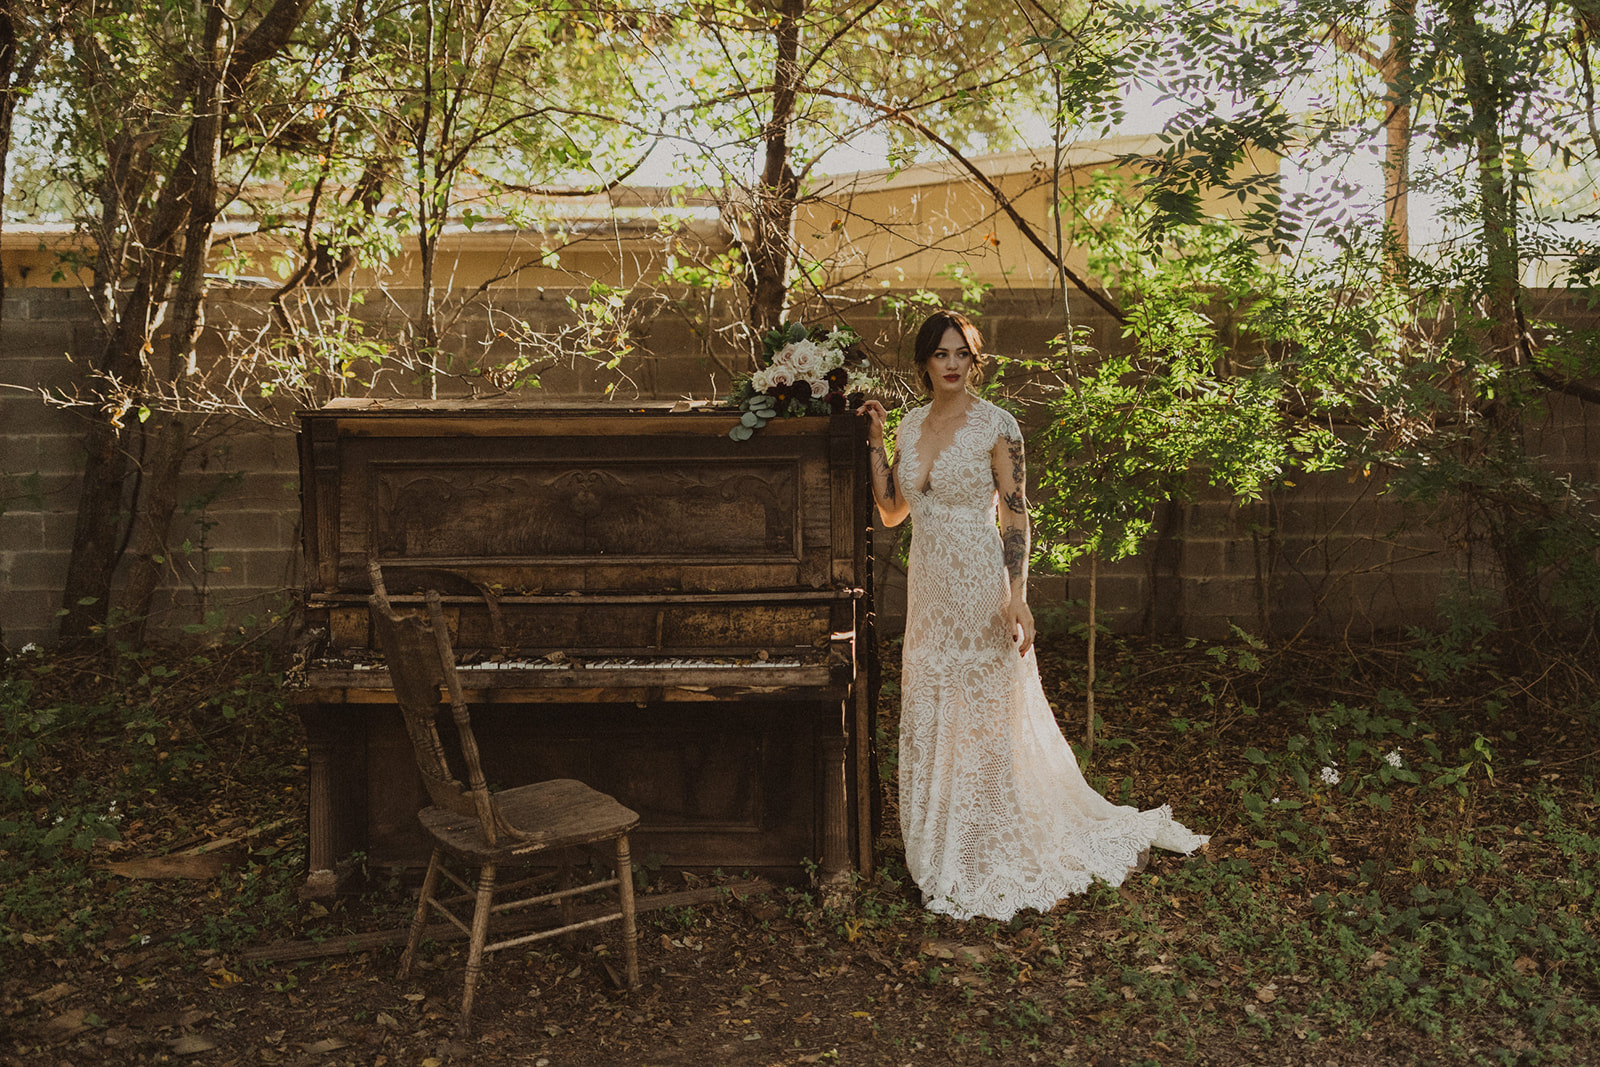 bride stands beside outdoor piano in garden